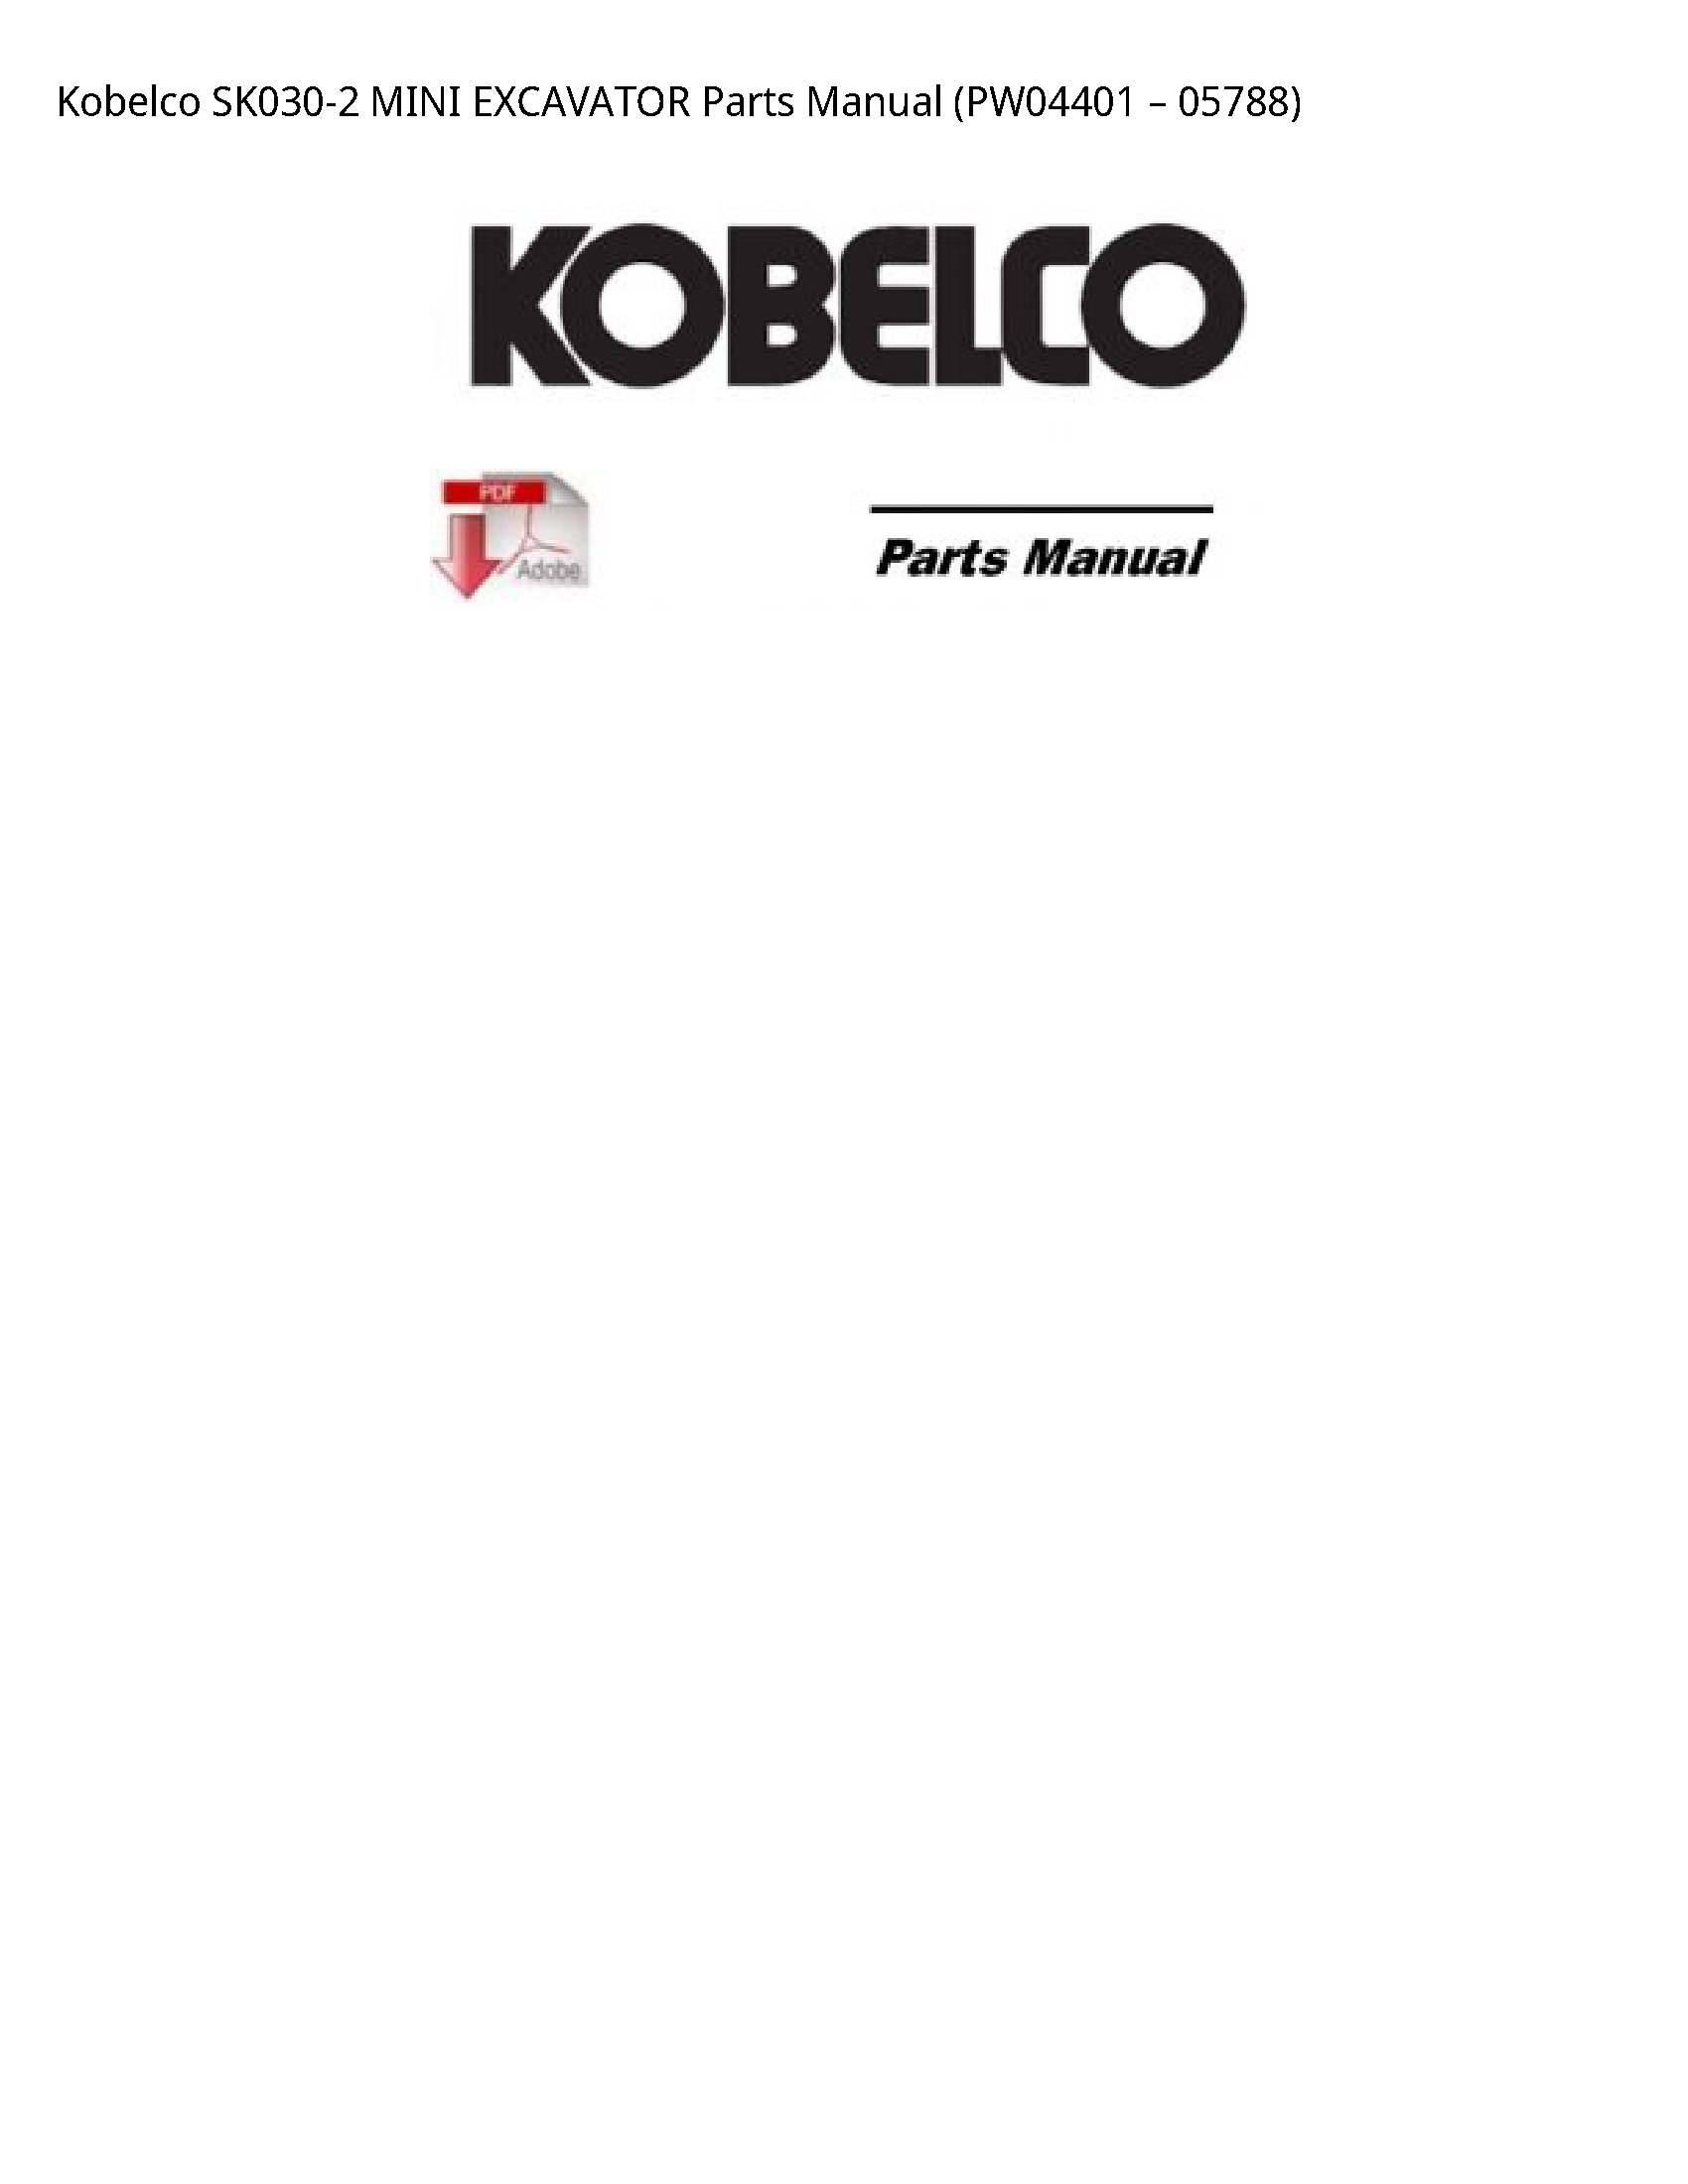 Kobelco SK030-2 MINI EXCAVATOR Parts manual